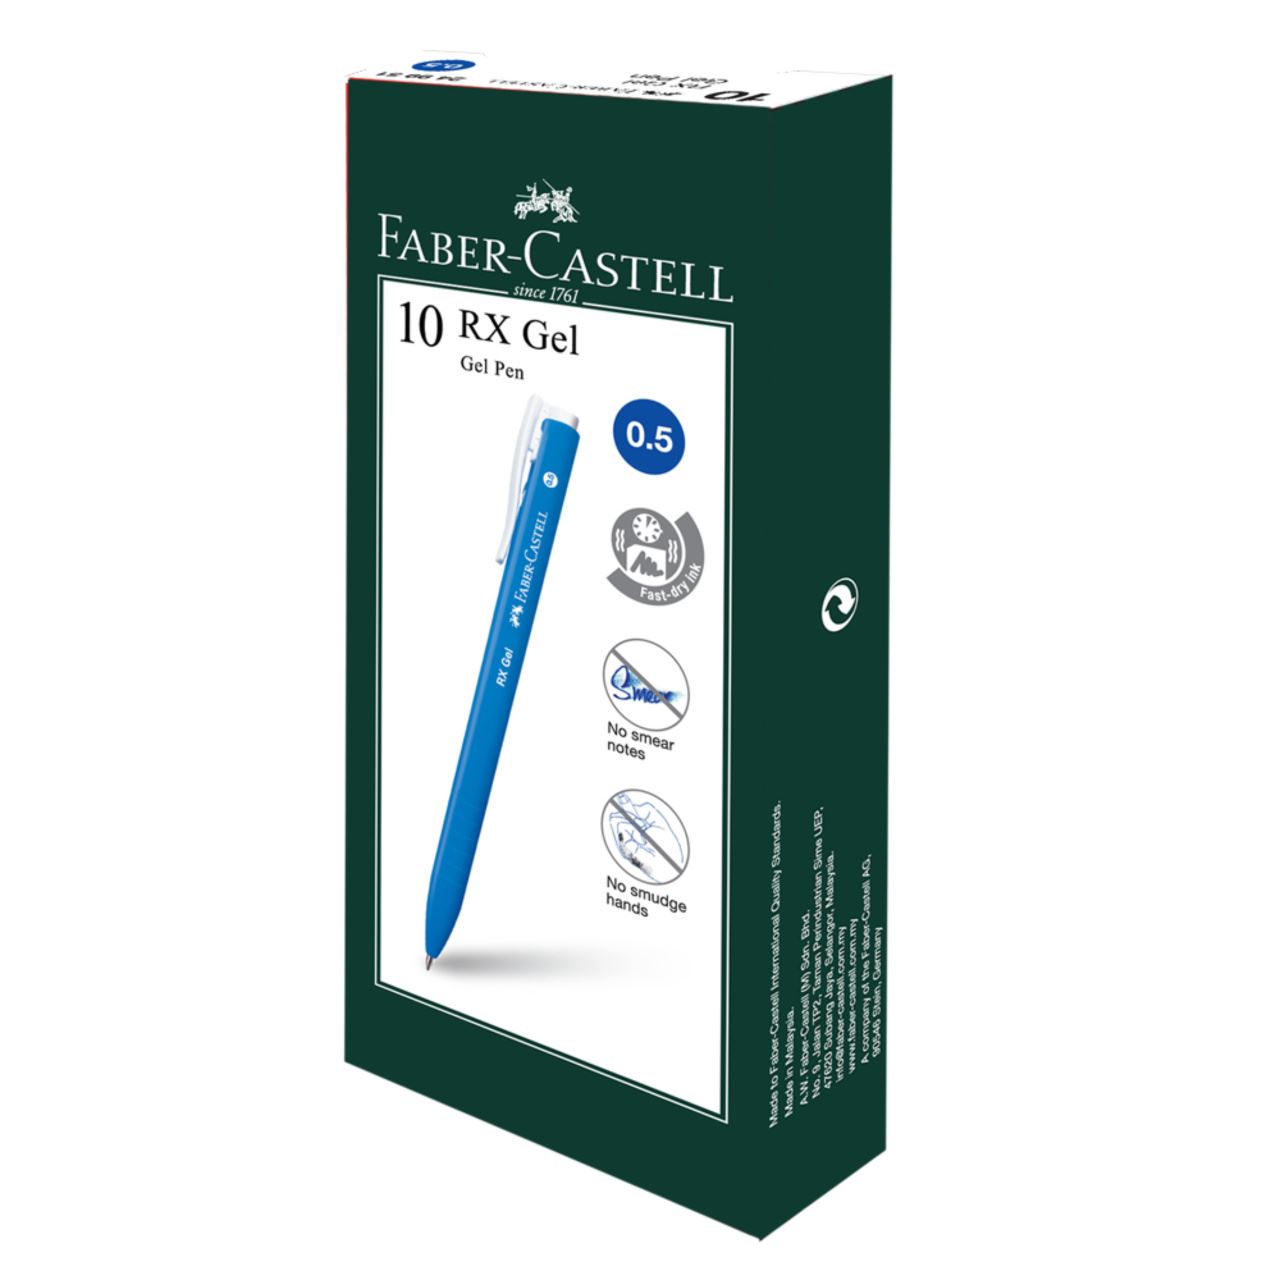 Faber-Castell - Gel pen RX Gel, 0.5mm, blue